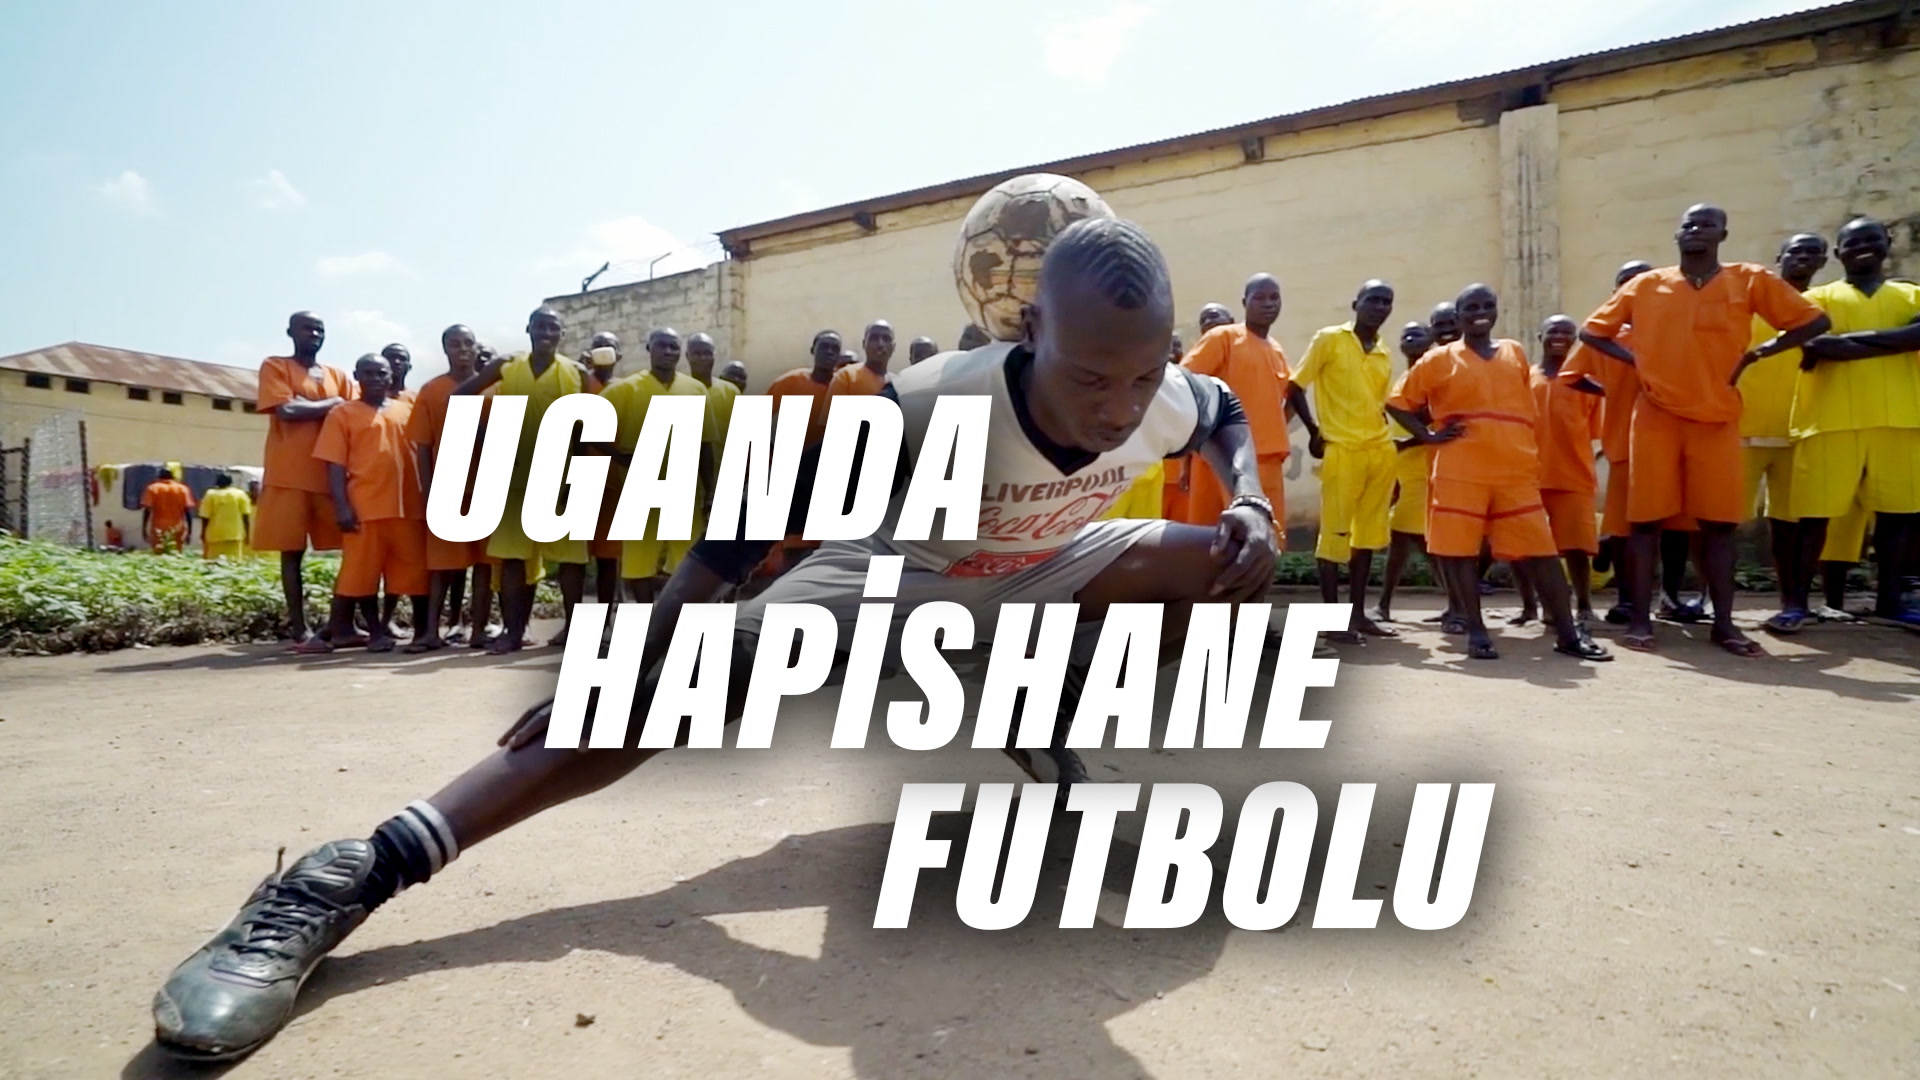 Uganda hapishane futbolu